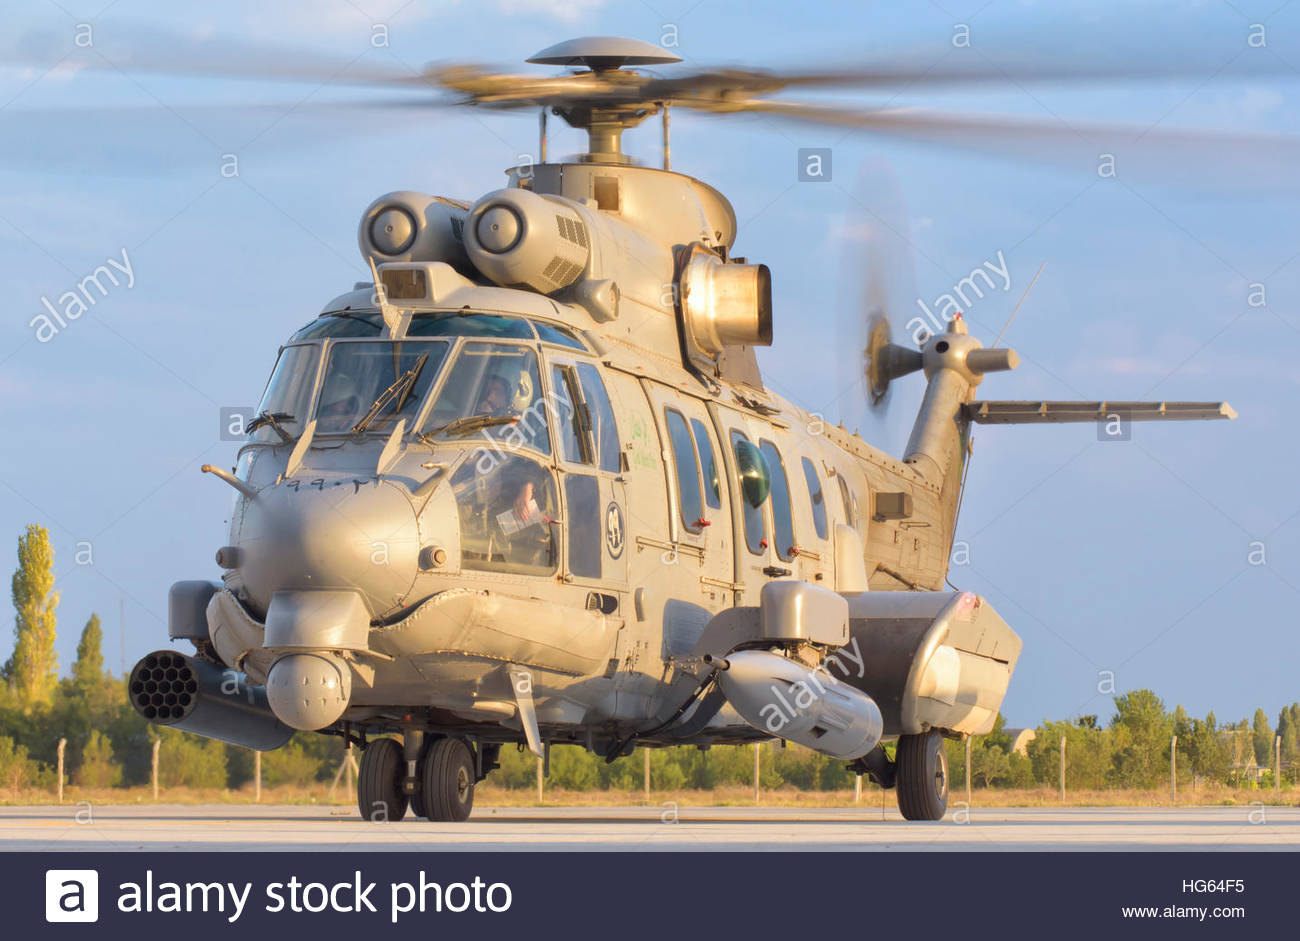 royal-saudi-air-force-as532-cougar-csar-helicopter-HG64F5.jpg